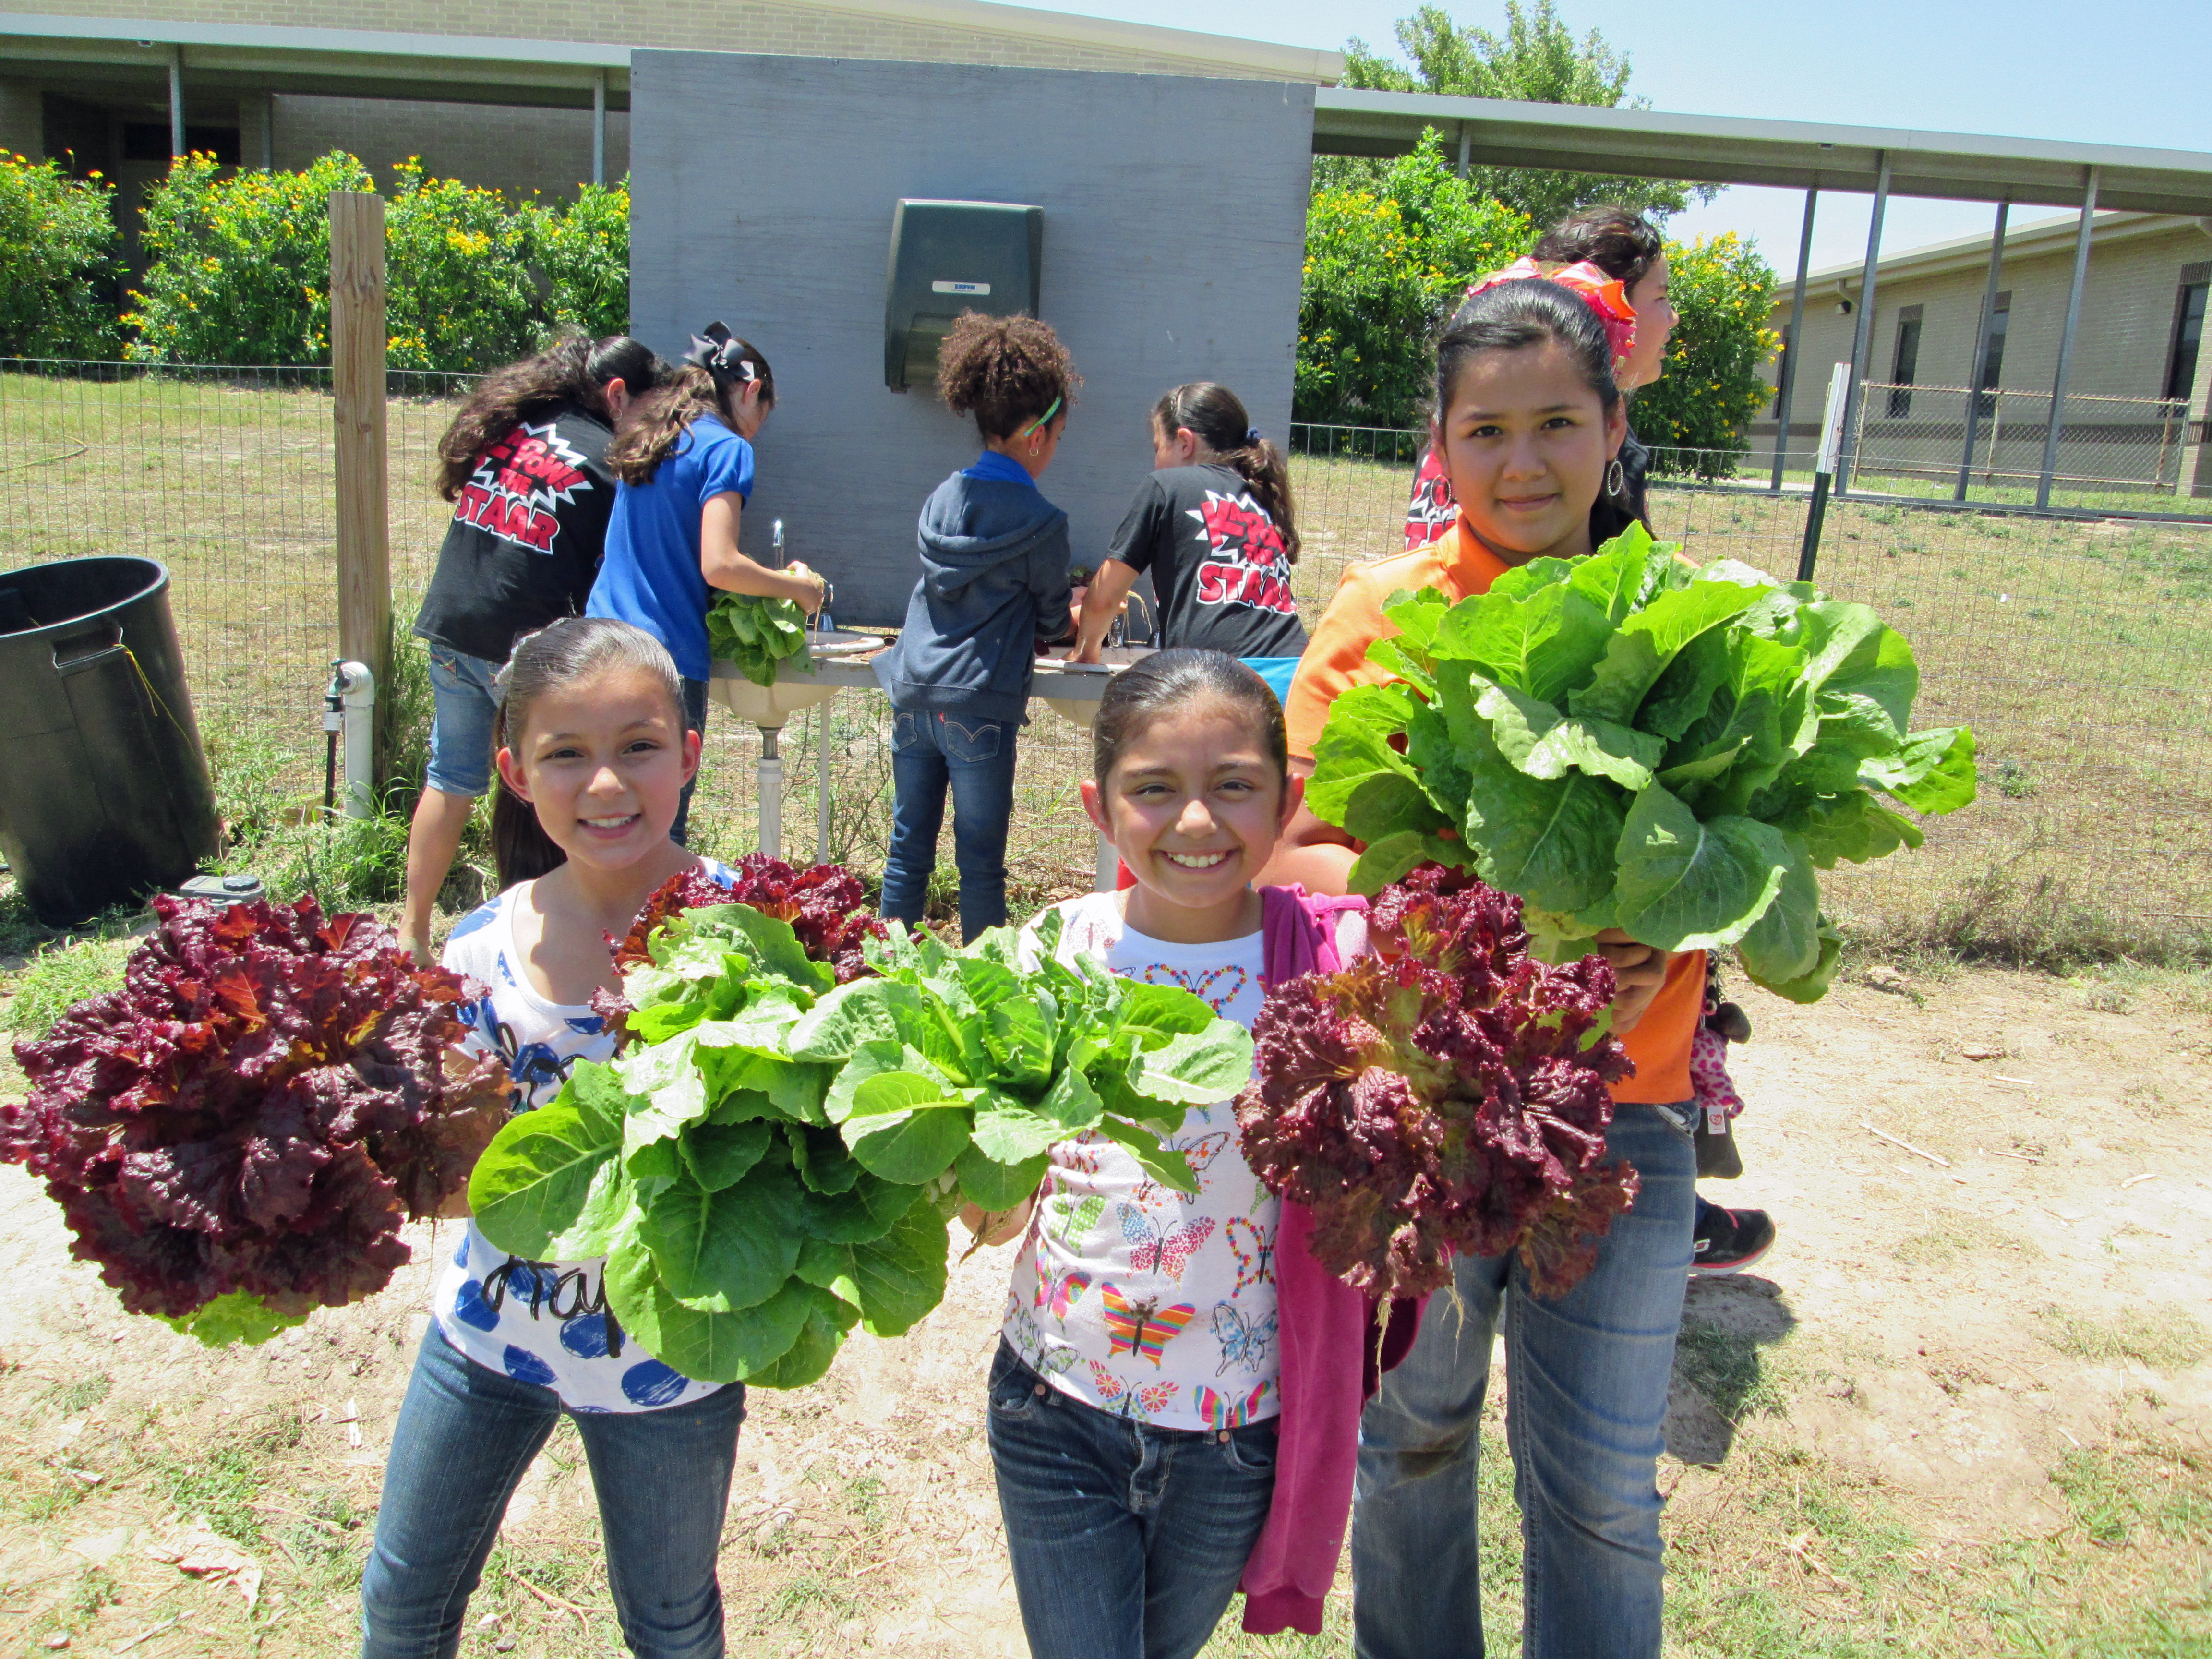 School Garden Workshop for educators set Aug. 4 in Georgetown